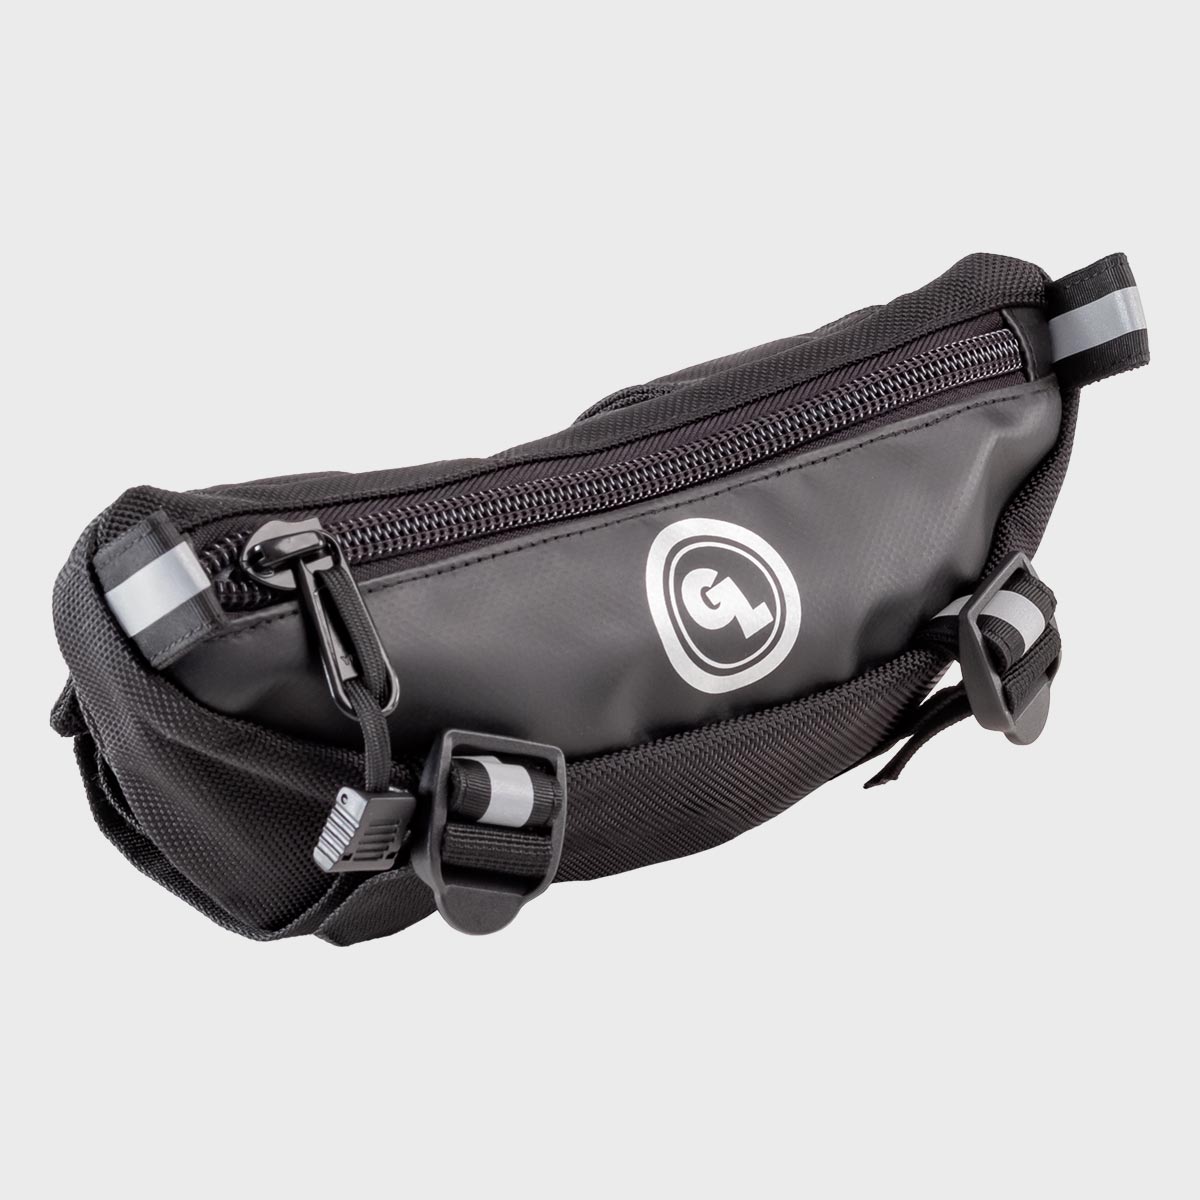 Bicycle Handlebar Bag - 2L + Water Resistant